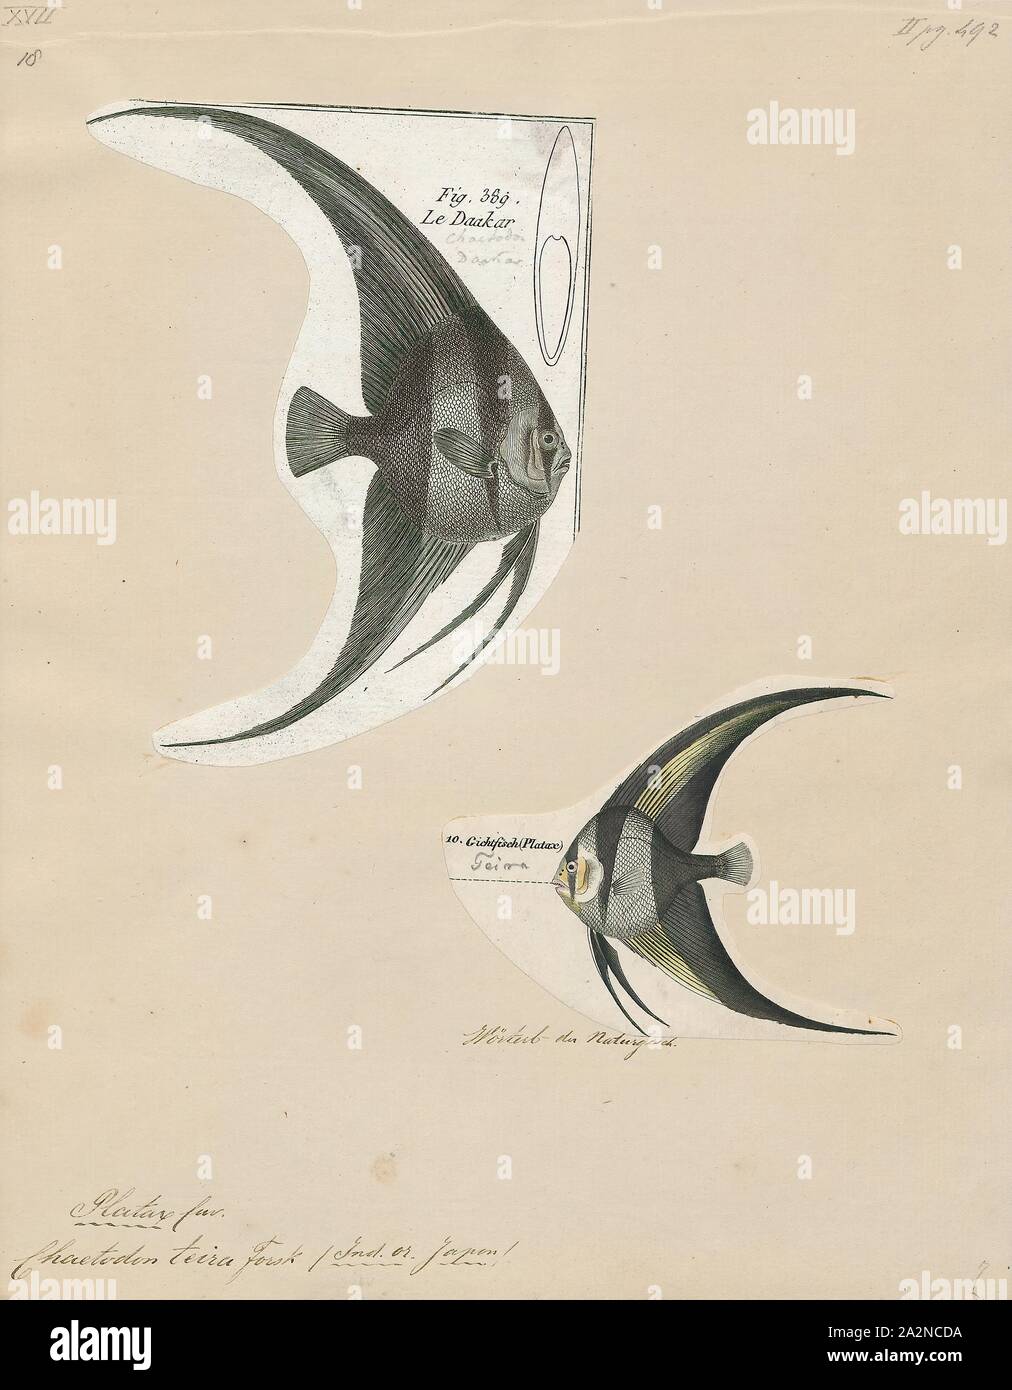 Platax teira, Drucken, Platax teira, auch bekannt als teira longfin Batfish, Fledermausfische, longfin spadefish, oder Runde konfrontiert Fledermausfische ist ein Fisch aus der Indo-West Pazifik. Es macht gelegentlich seinen Weg in das Aquarium. Es wächst bis zu einer Größe von 60 cm (24 in) Länge., 1700-1880 Stockfoto